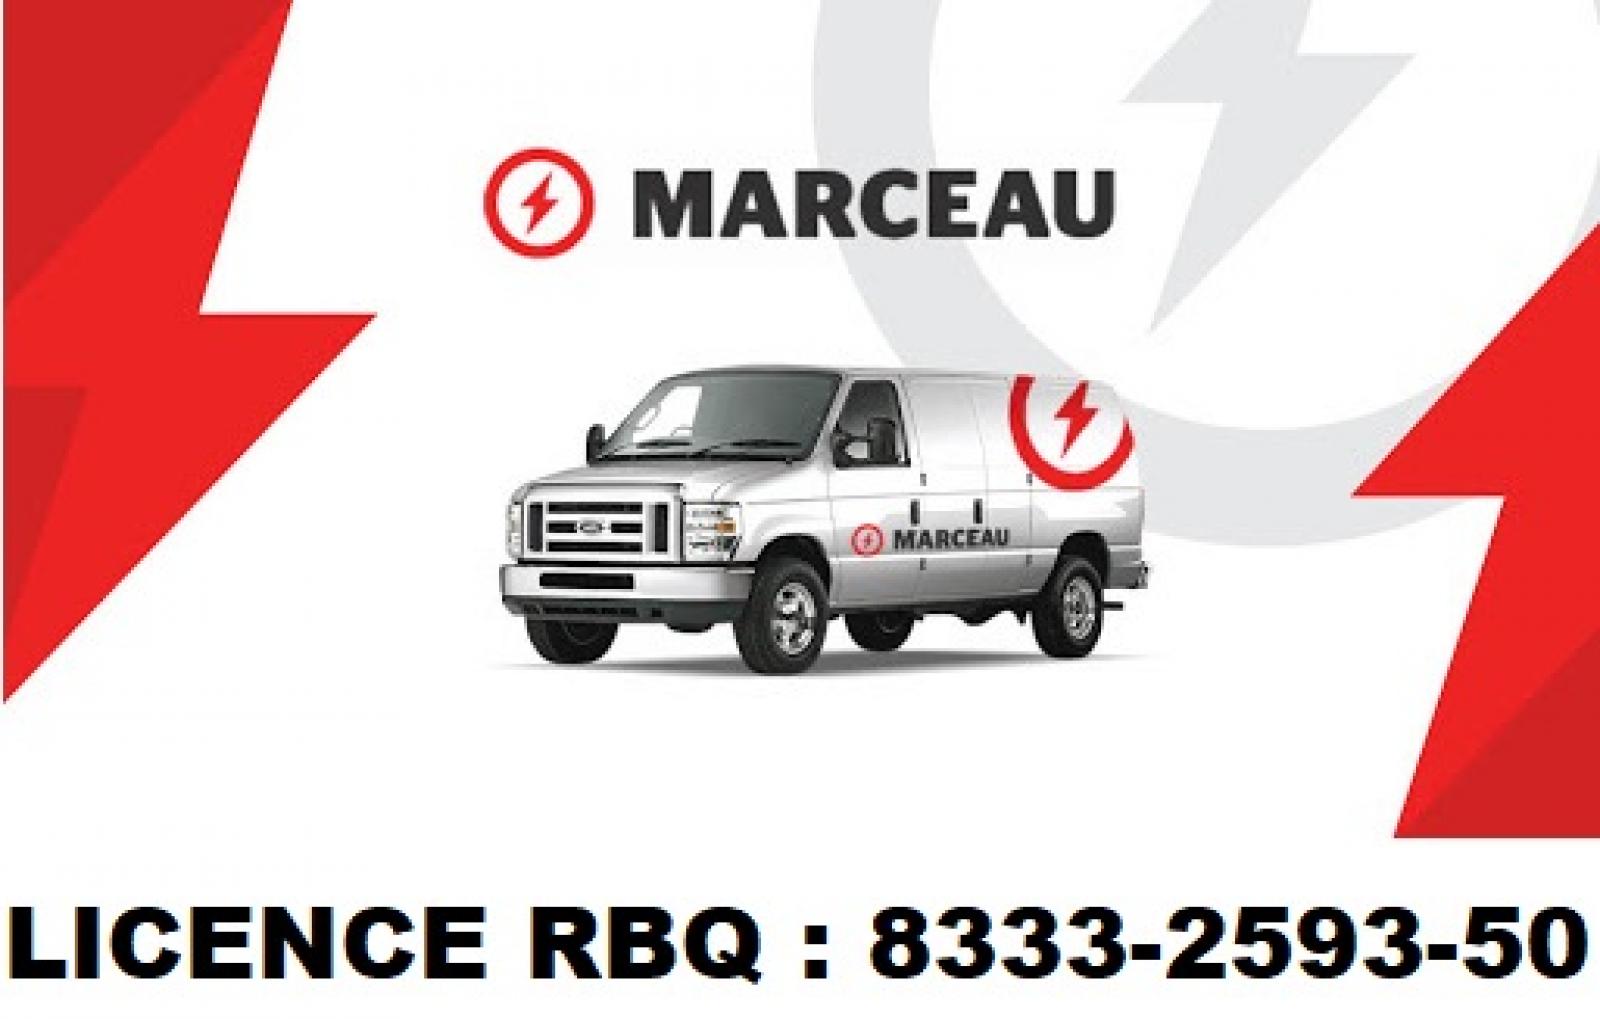 Marceau entrepreneur électricien Québec. Logo